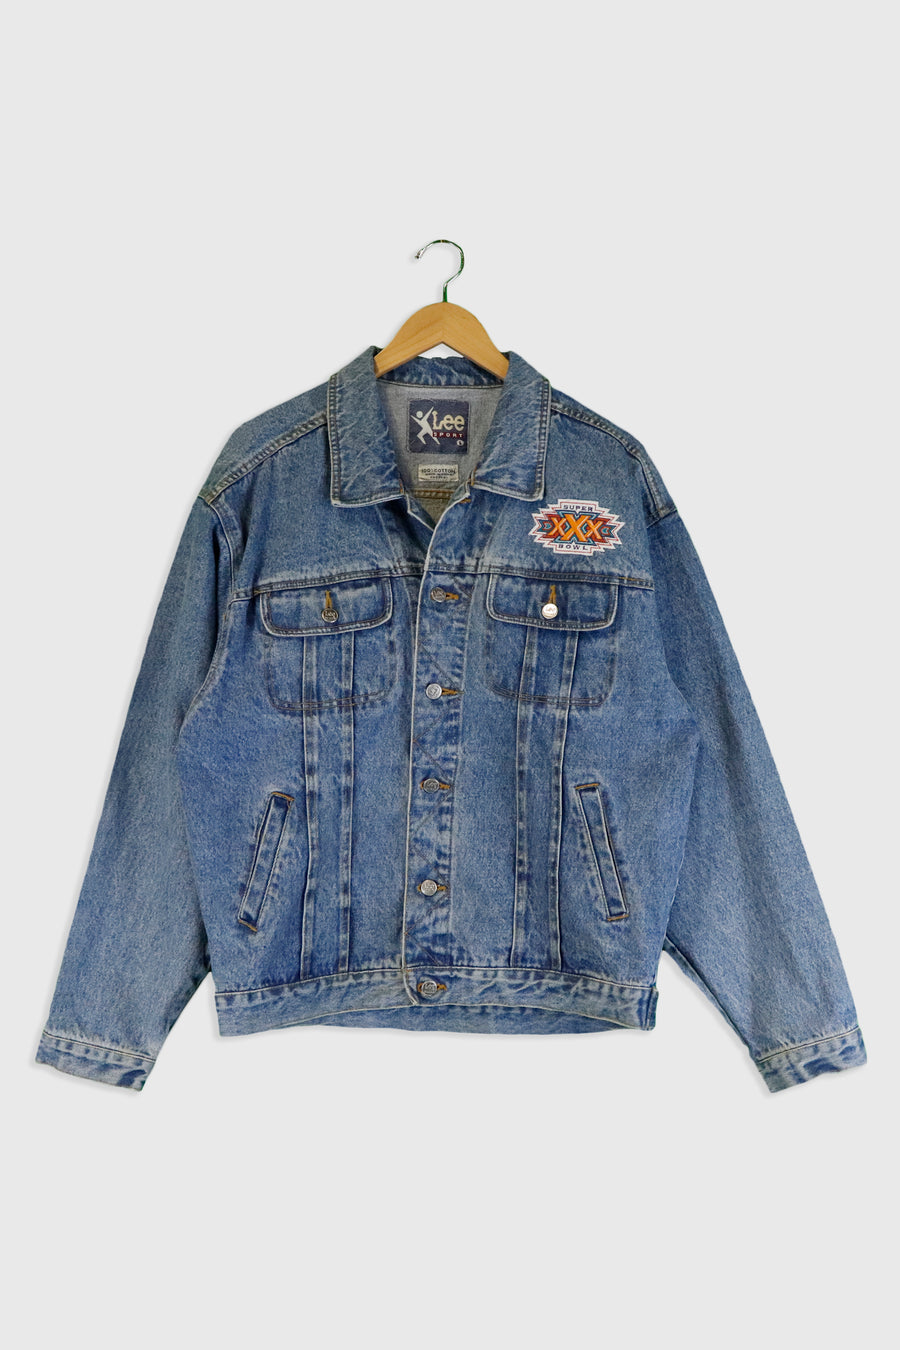 Vintage Super Bowl Embroidered Denim Full Button Up Jacket Sz L